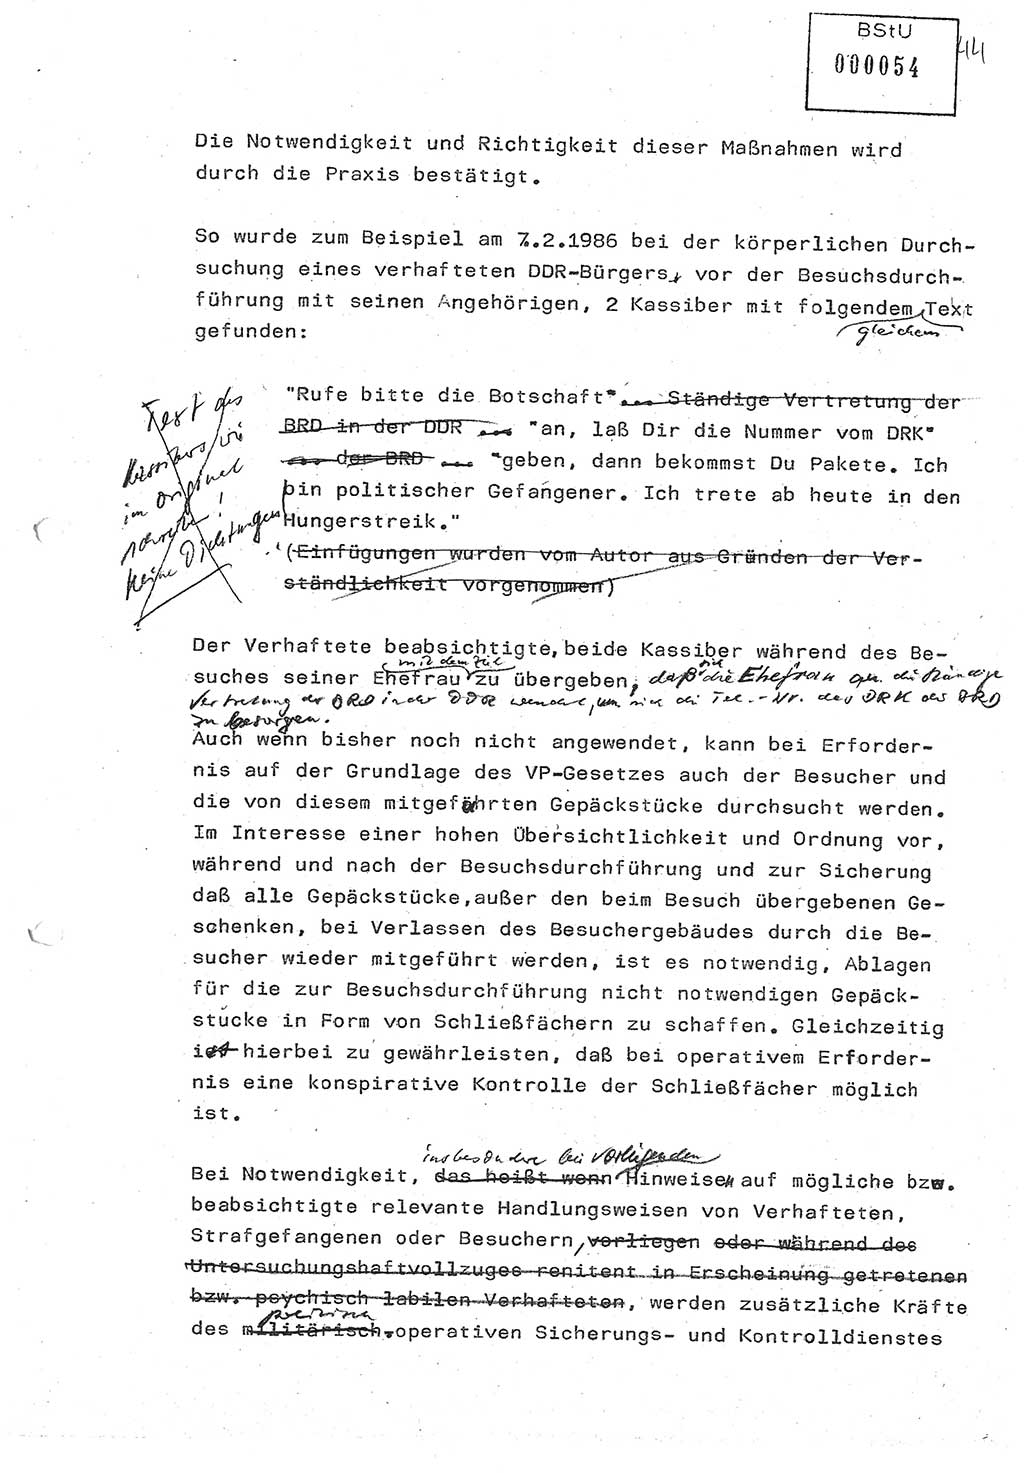 Diplomarbeit (Entwurf) Oberleutnant Peter Parke (Abt. ⅩⅣ), Ministerium für Staatssicherheit (MfS) [Deutsche Demokratische Republik (DDR)], Juristische Hochschule (JHS), Geheime Verschlußsache (GVS) o001-98/86, Potsdam 1986, Seite 54 (Dipl.-Arb. MfS DDR JHS GVS o001-98/86 1986, S. 54)